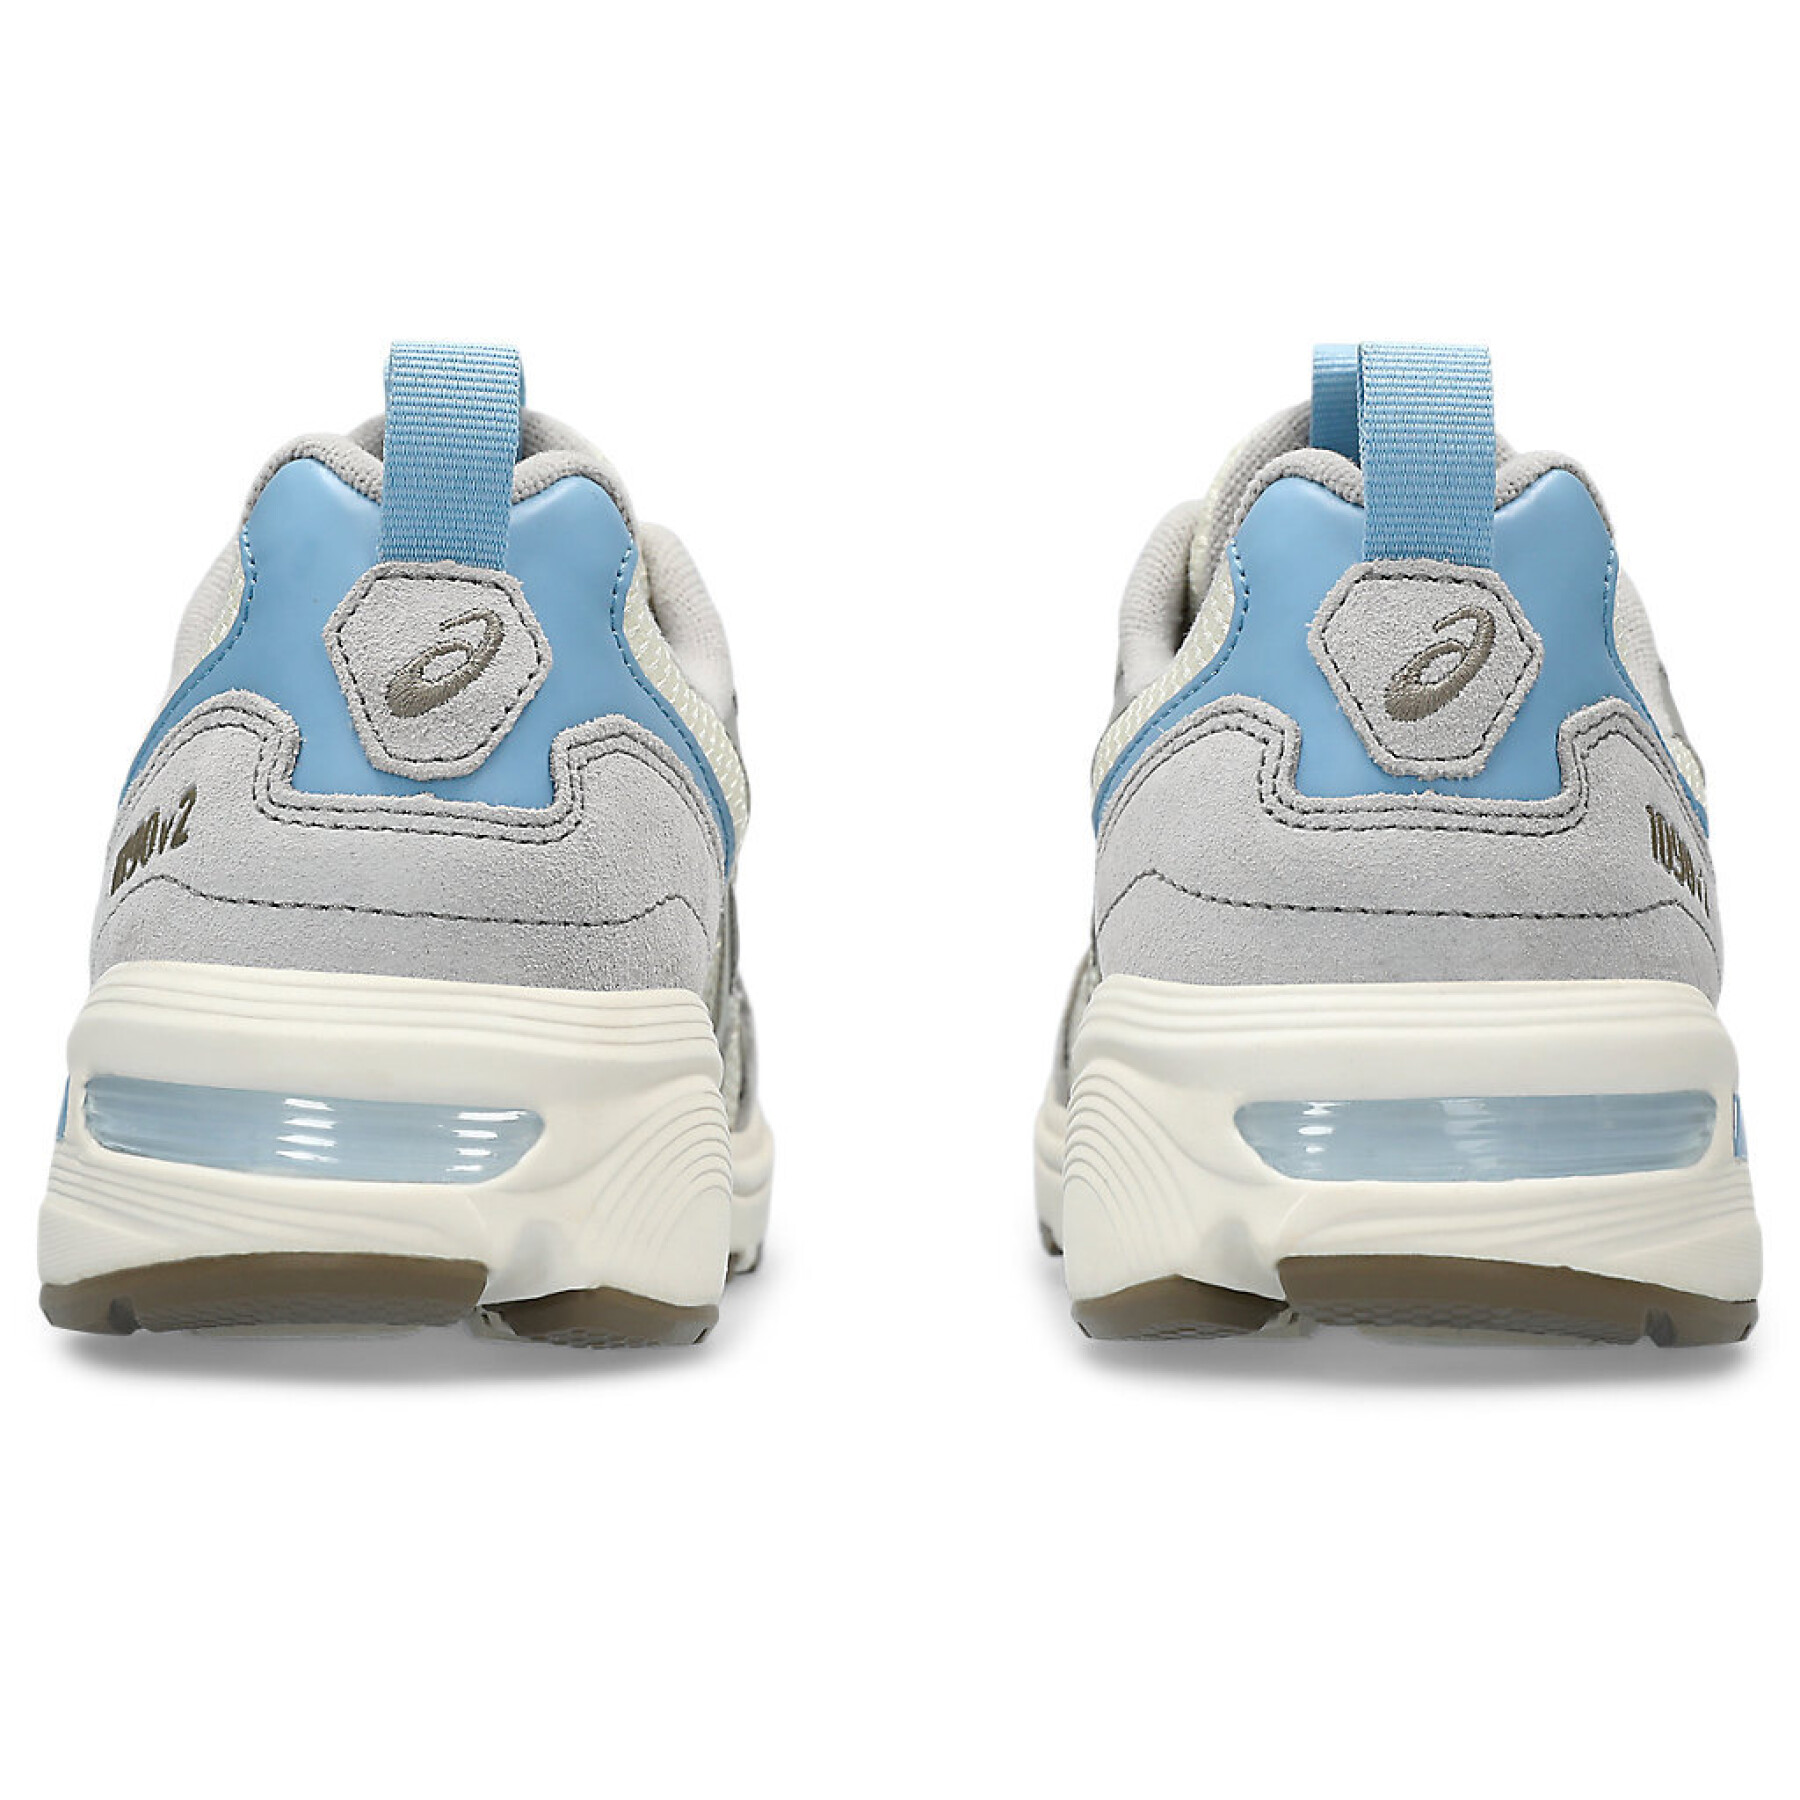 Sneakers Asics Gel-1090v2